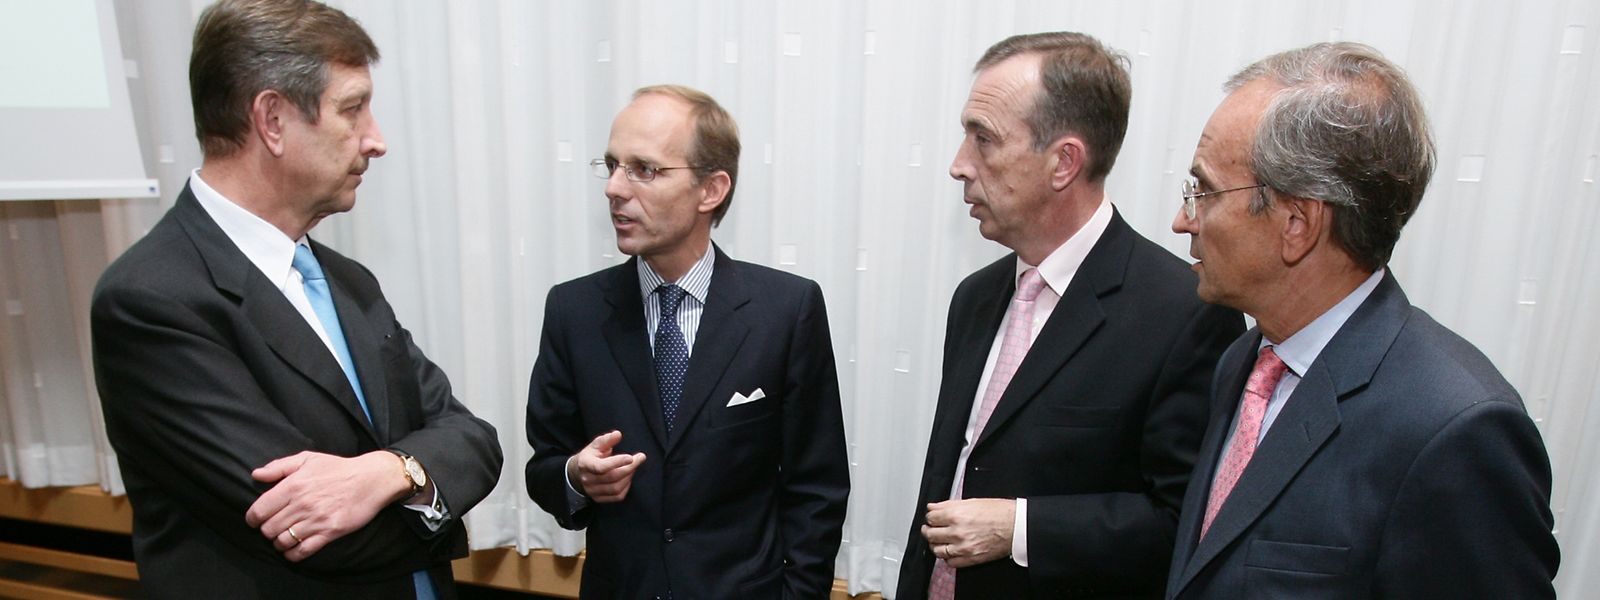 6. Oktober 2008. Aus Fortis Luxemburg wird BGL BNP Paribas, v.l.n.r.: Bankchef Carlo Thill,  Finanzminister Luc Frieden, und die beiden BNP Paribas-Topmanager Alain Papiasse und Eric Martin.